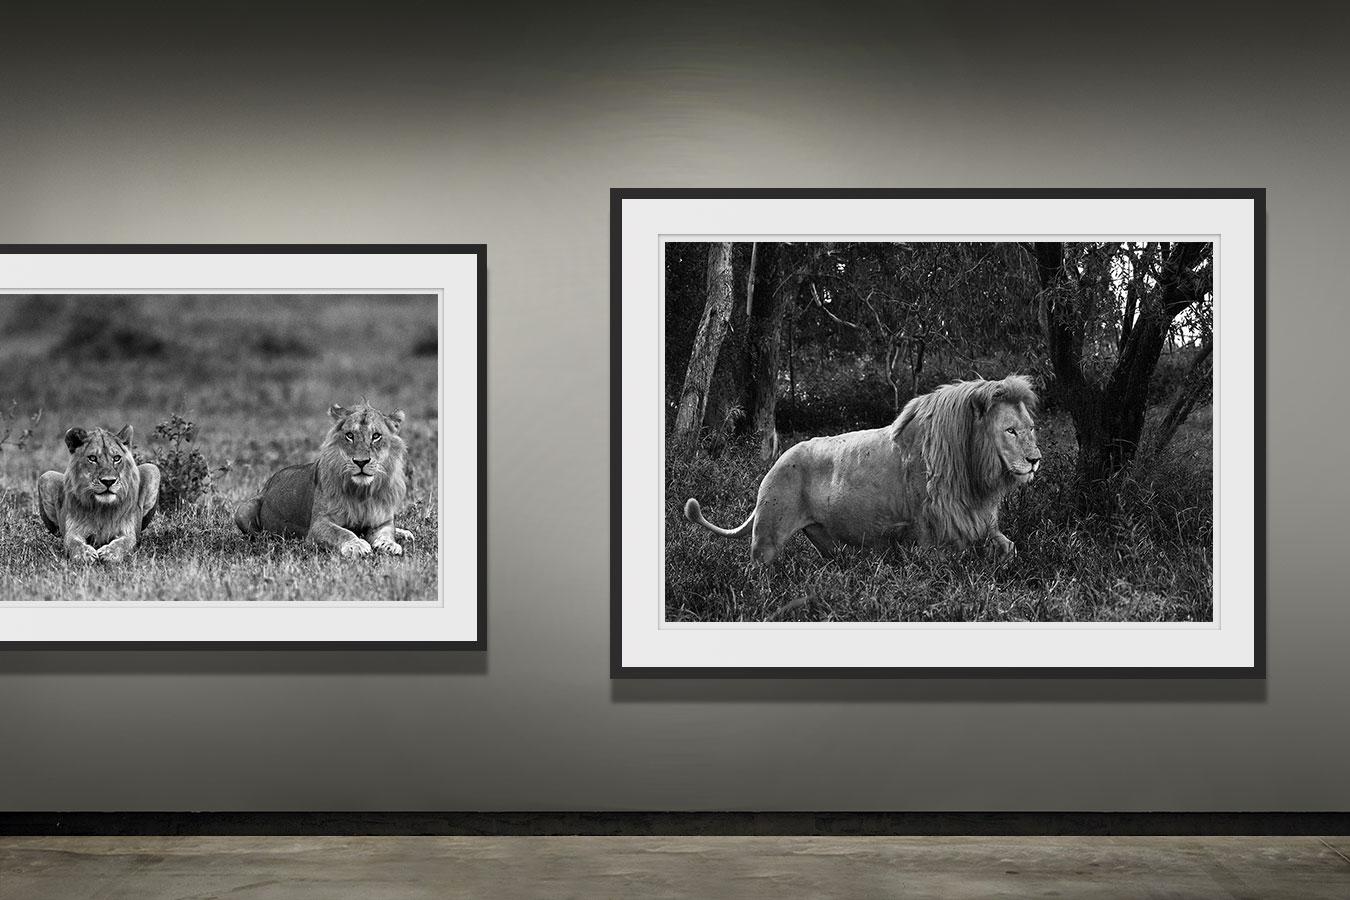 Lions, Tanzania, Africa  (Wildlife Africa) - Contemporary Photograph by Araquém Alcântara